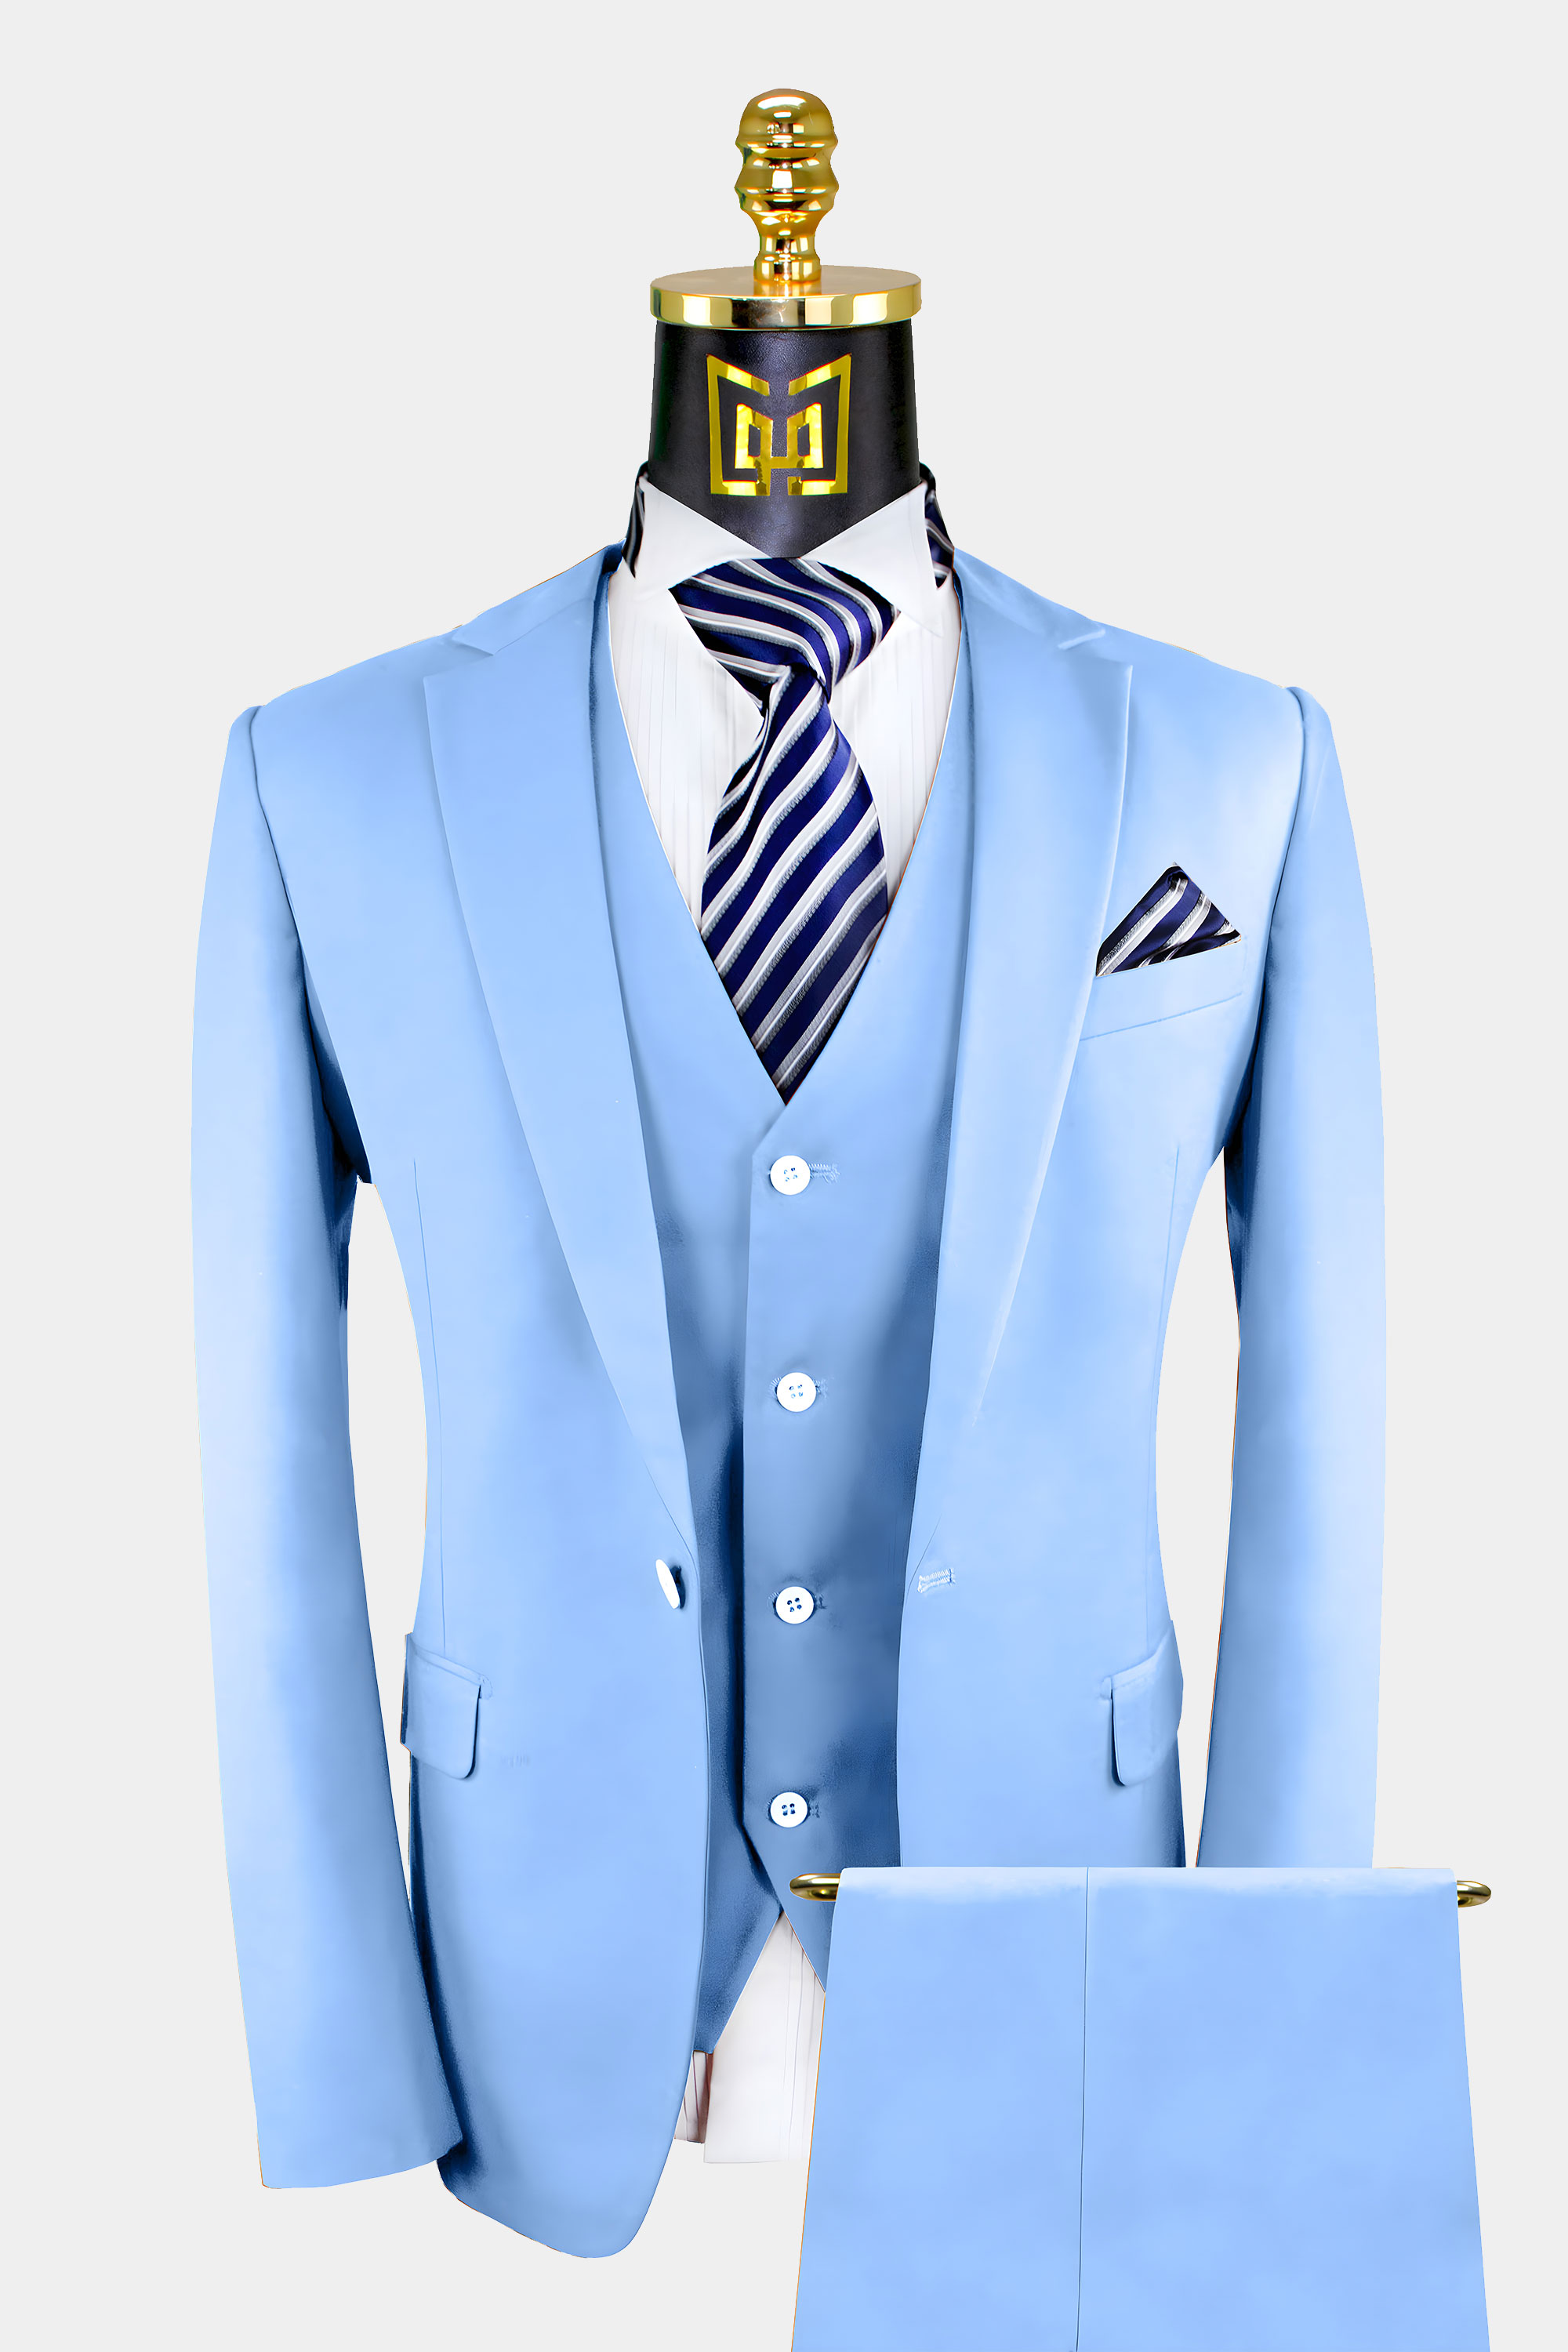 Sky Blue Wedding Suit | vlr.eng.br